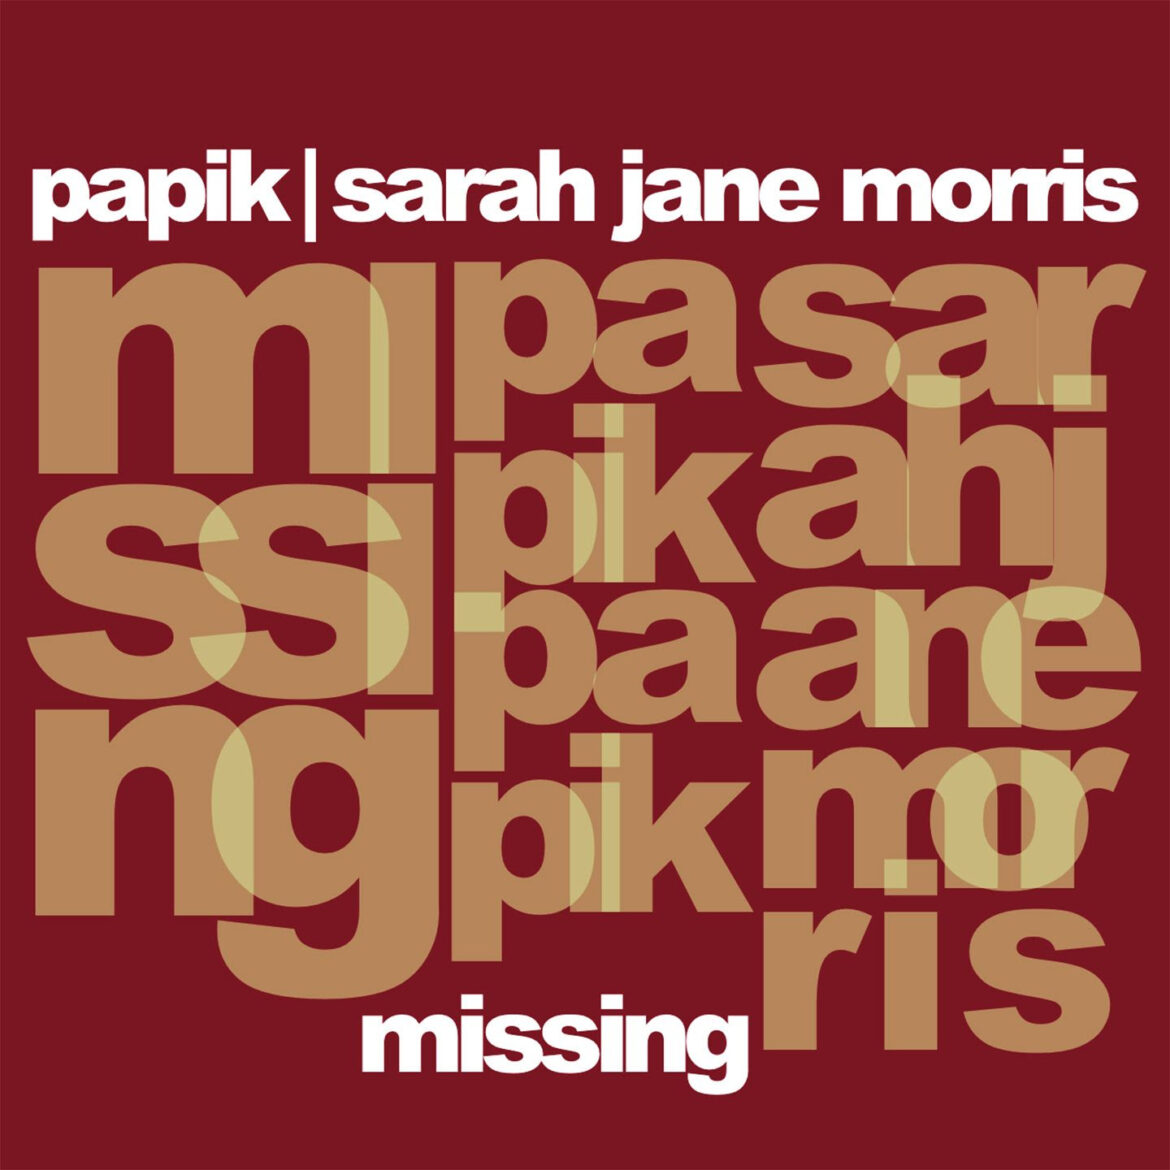 Venerdì 14 maggio esce in radio e in digitale il nuovo brano di Papik e Sarah Jane Morris, “MISSING”